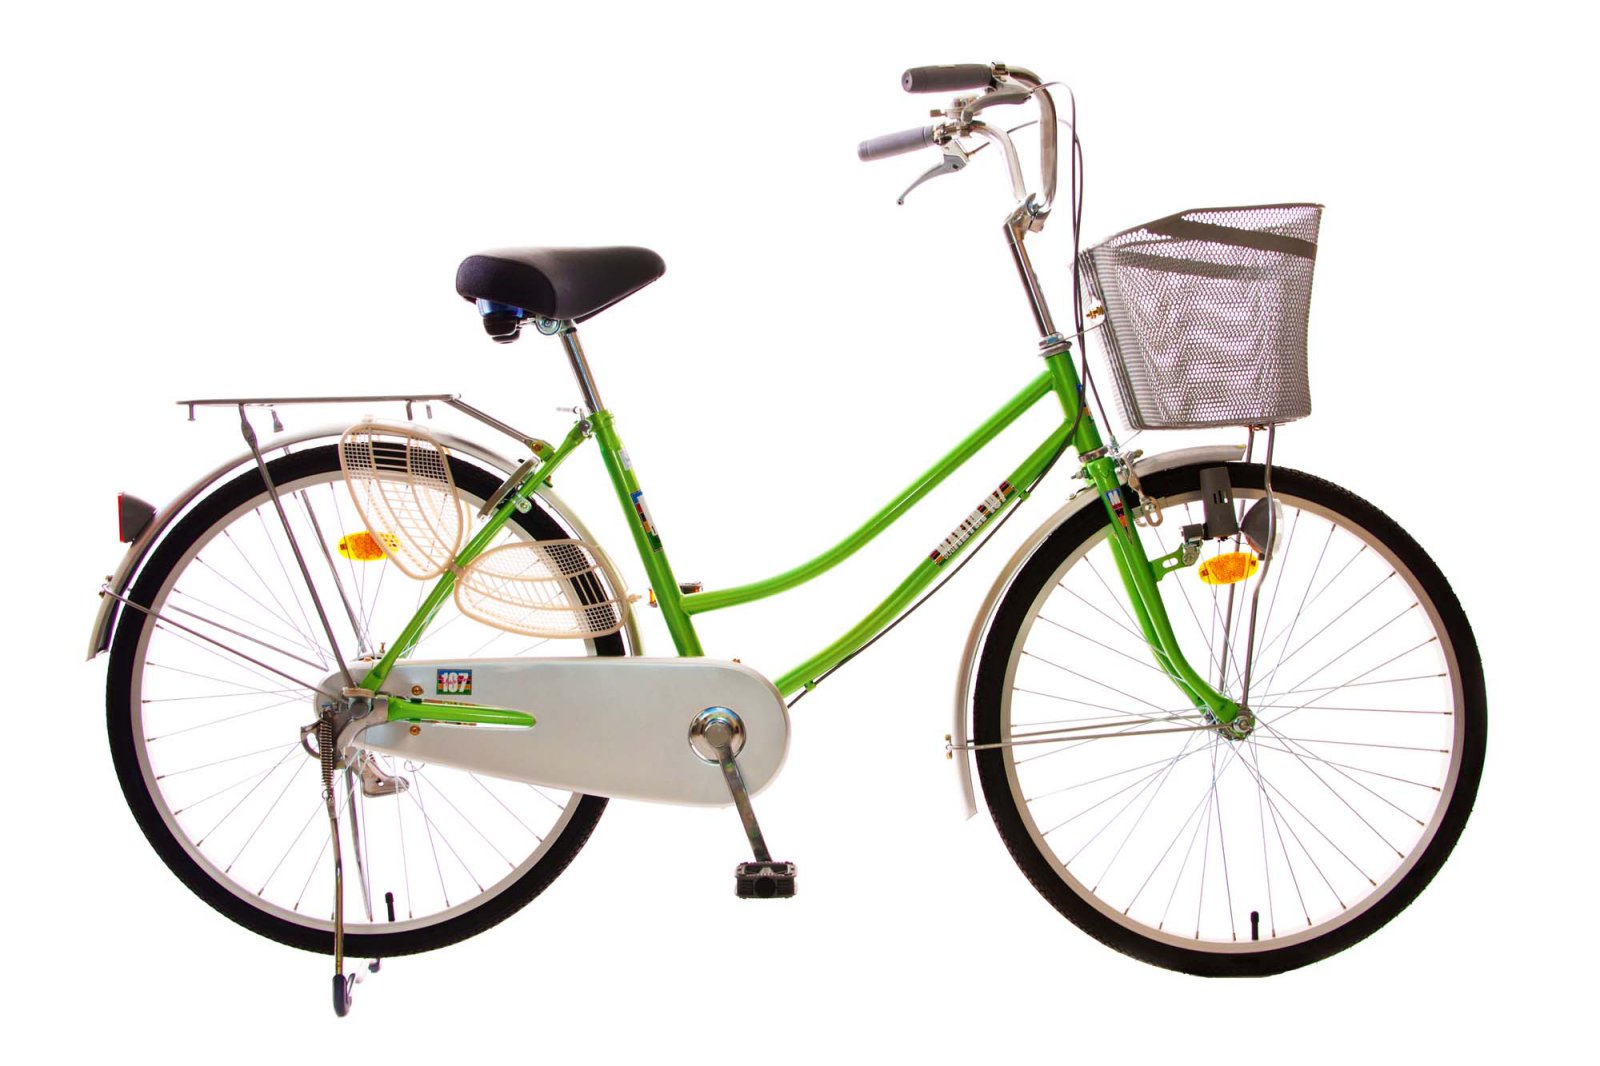 Chuyên bán các loại xe đạp chính hãng 100% + theo quà tặng hấp dẫn